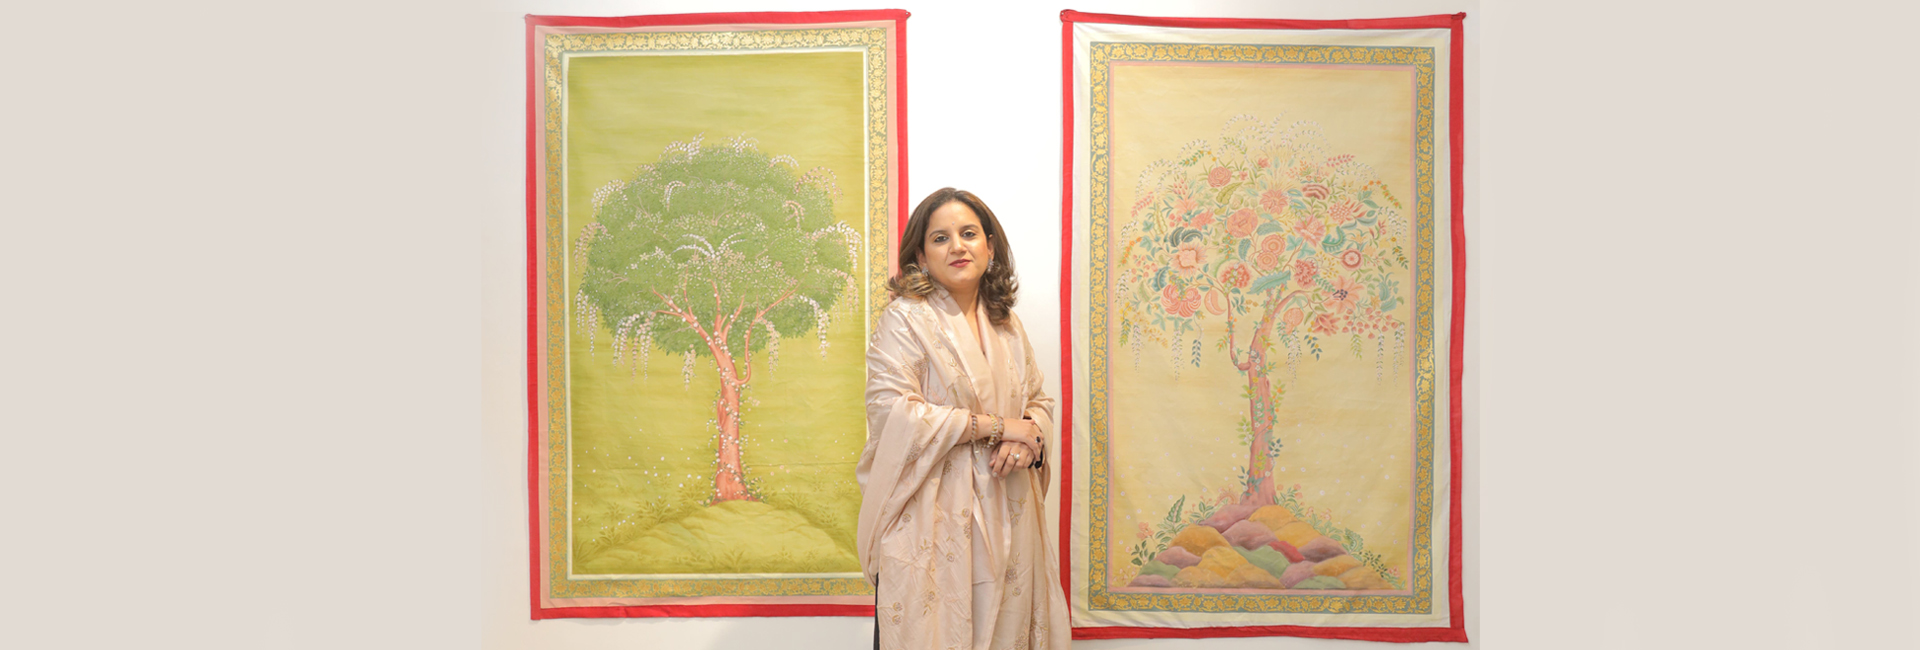 The Royal Diaries: Princess Vaishnavi of Kishangarh sedang berusaha untuk menghidupkan semula seni yang hilang